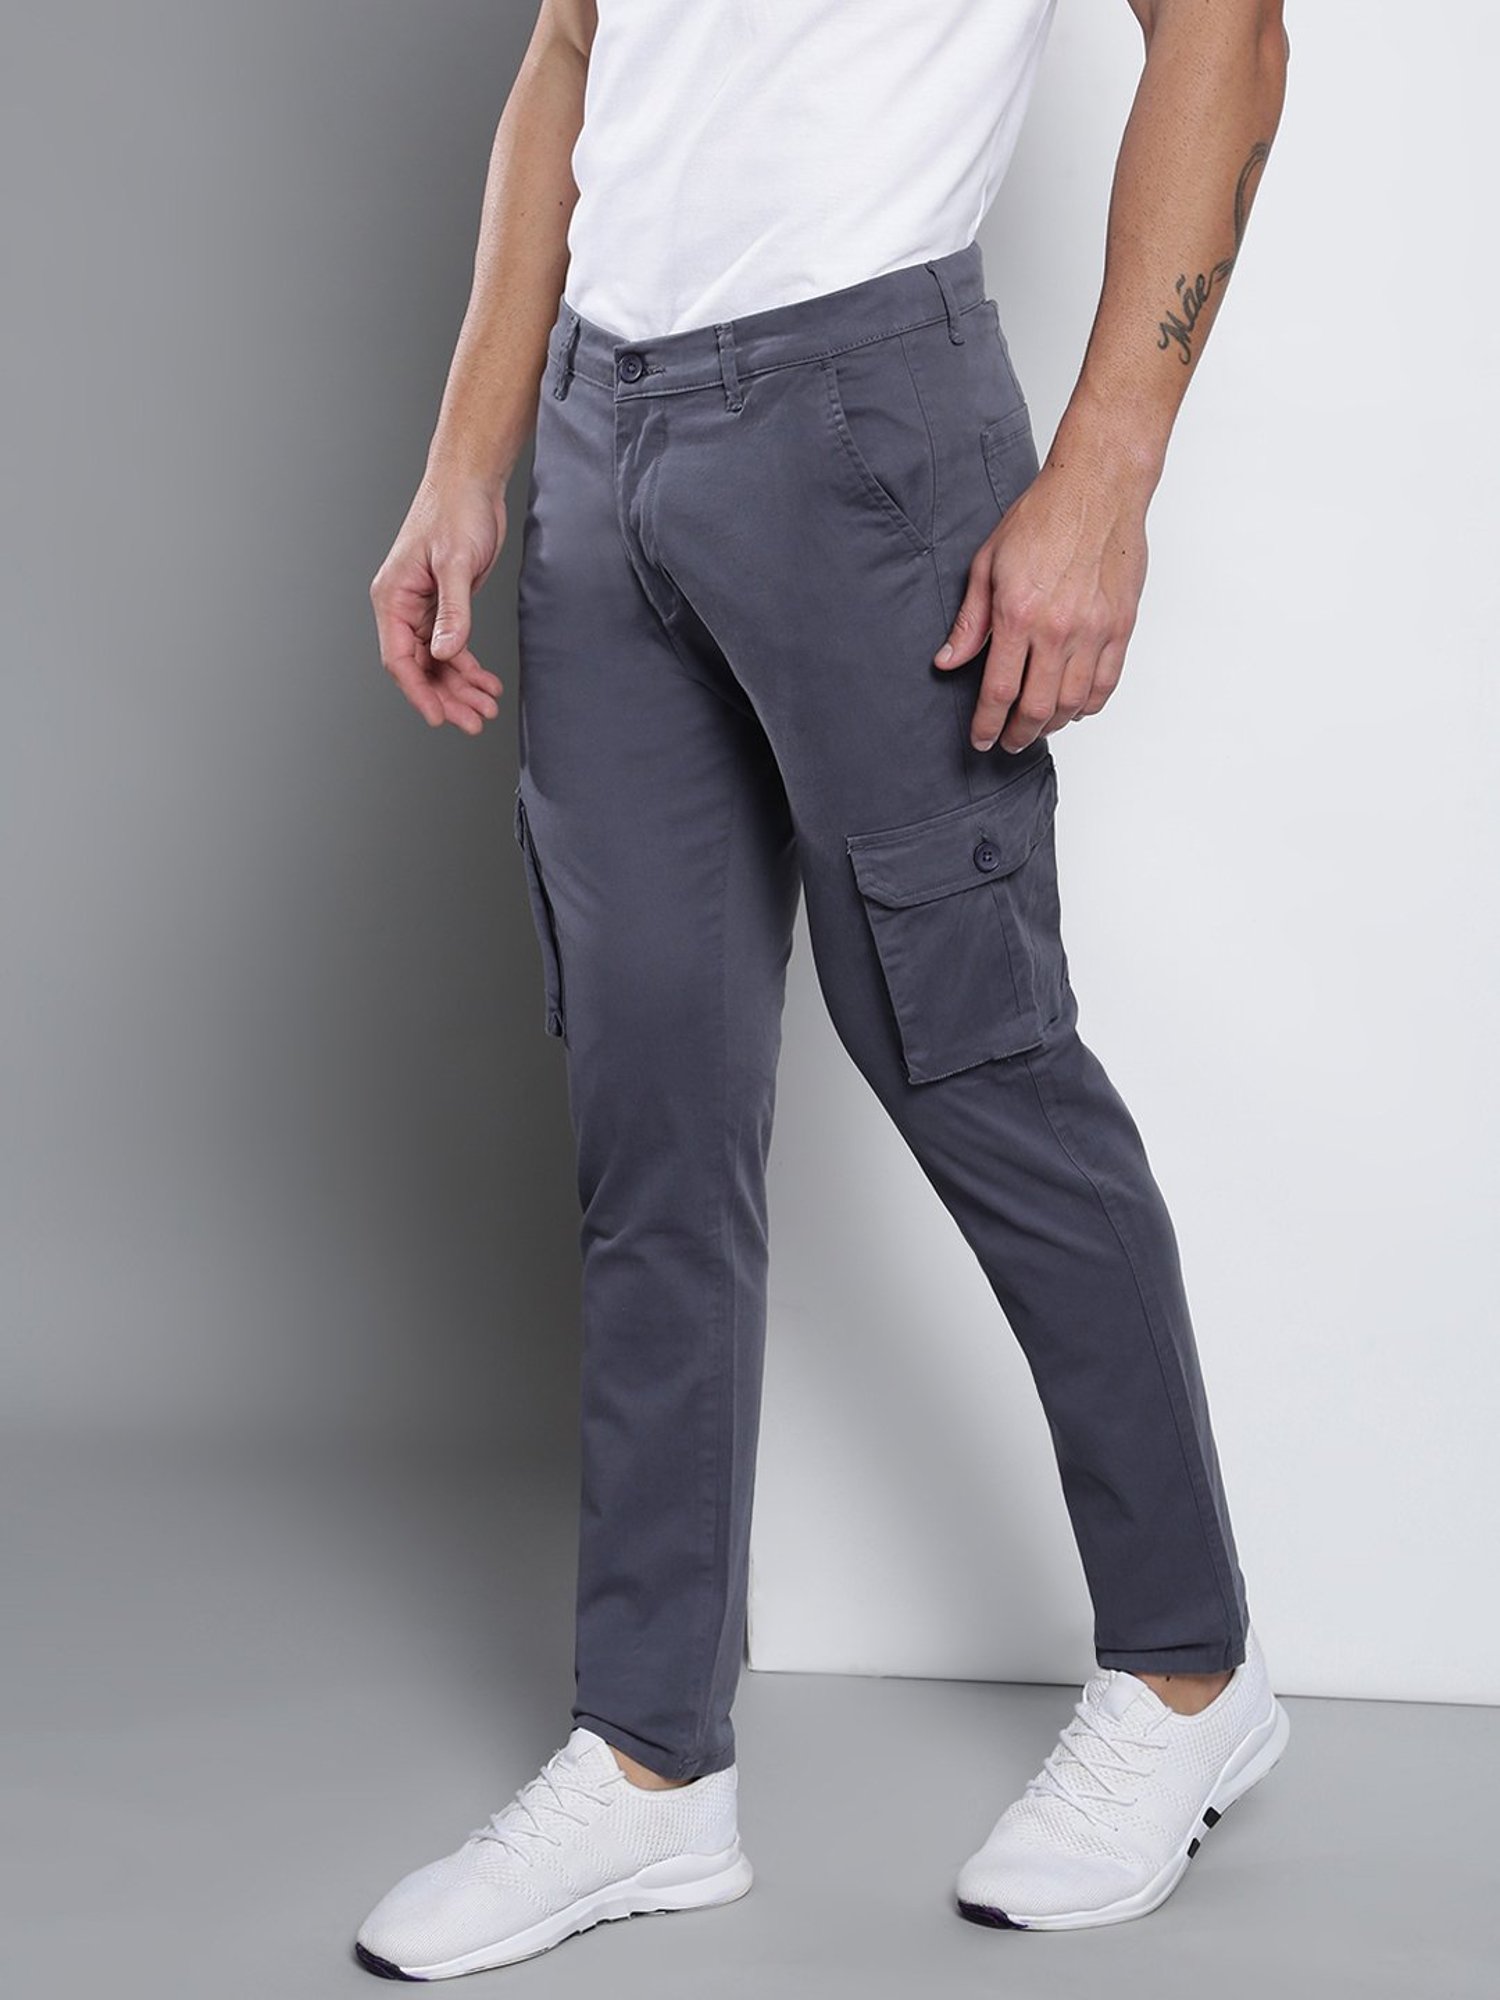 Buy Men's Cargo Levi's Trousers Online | Next UK